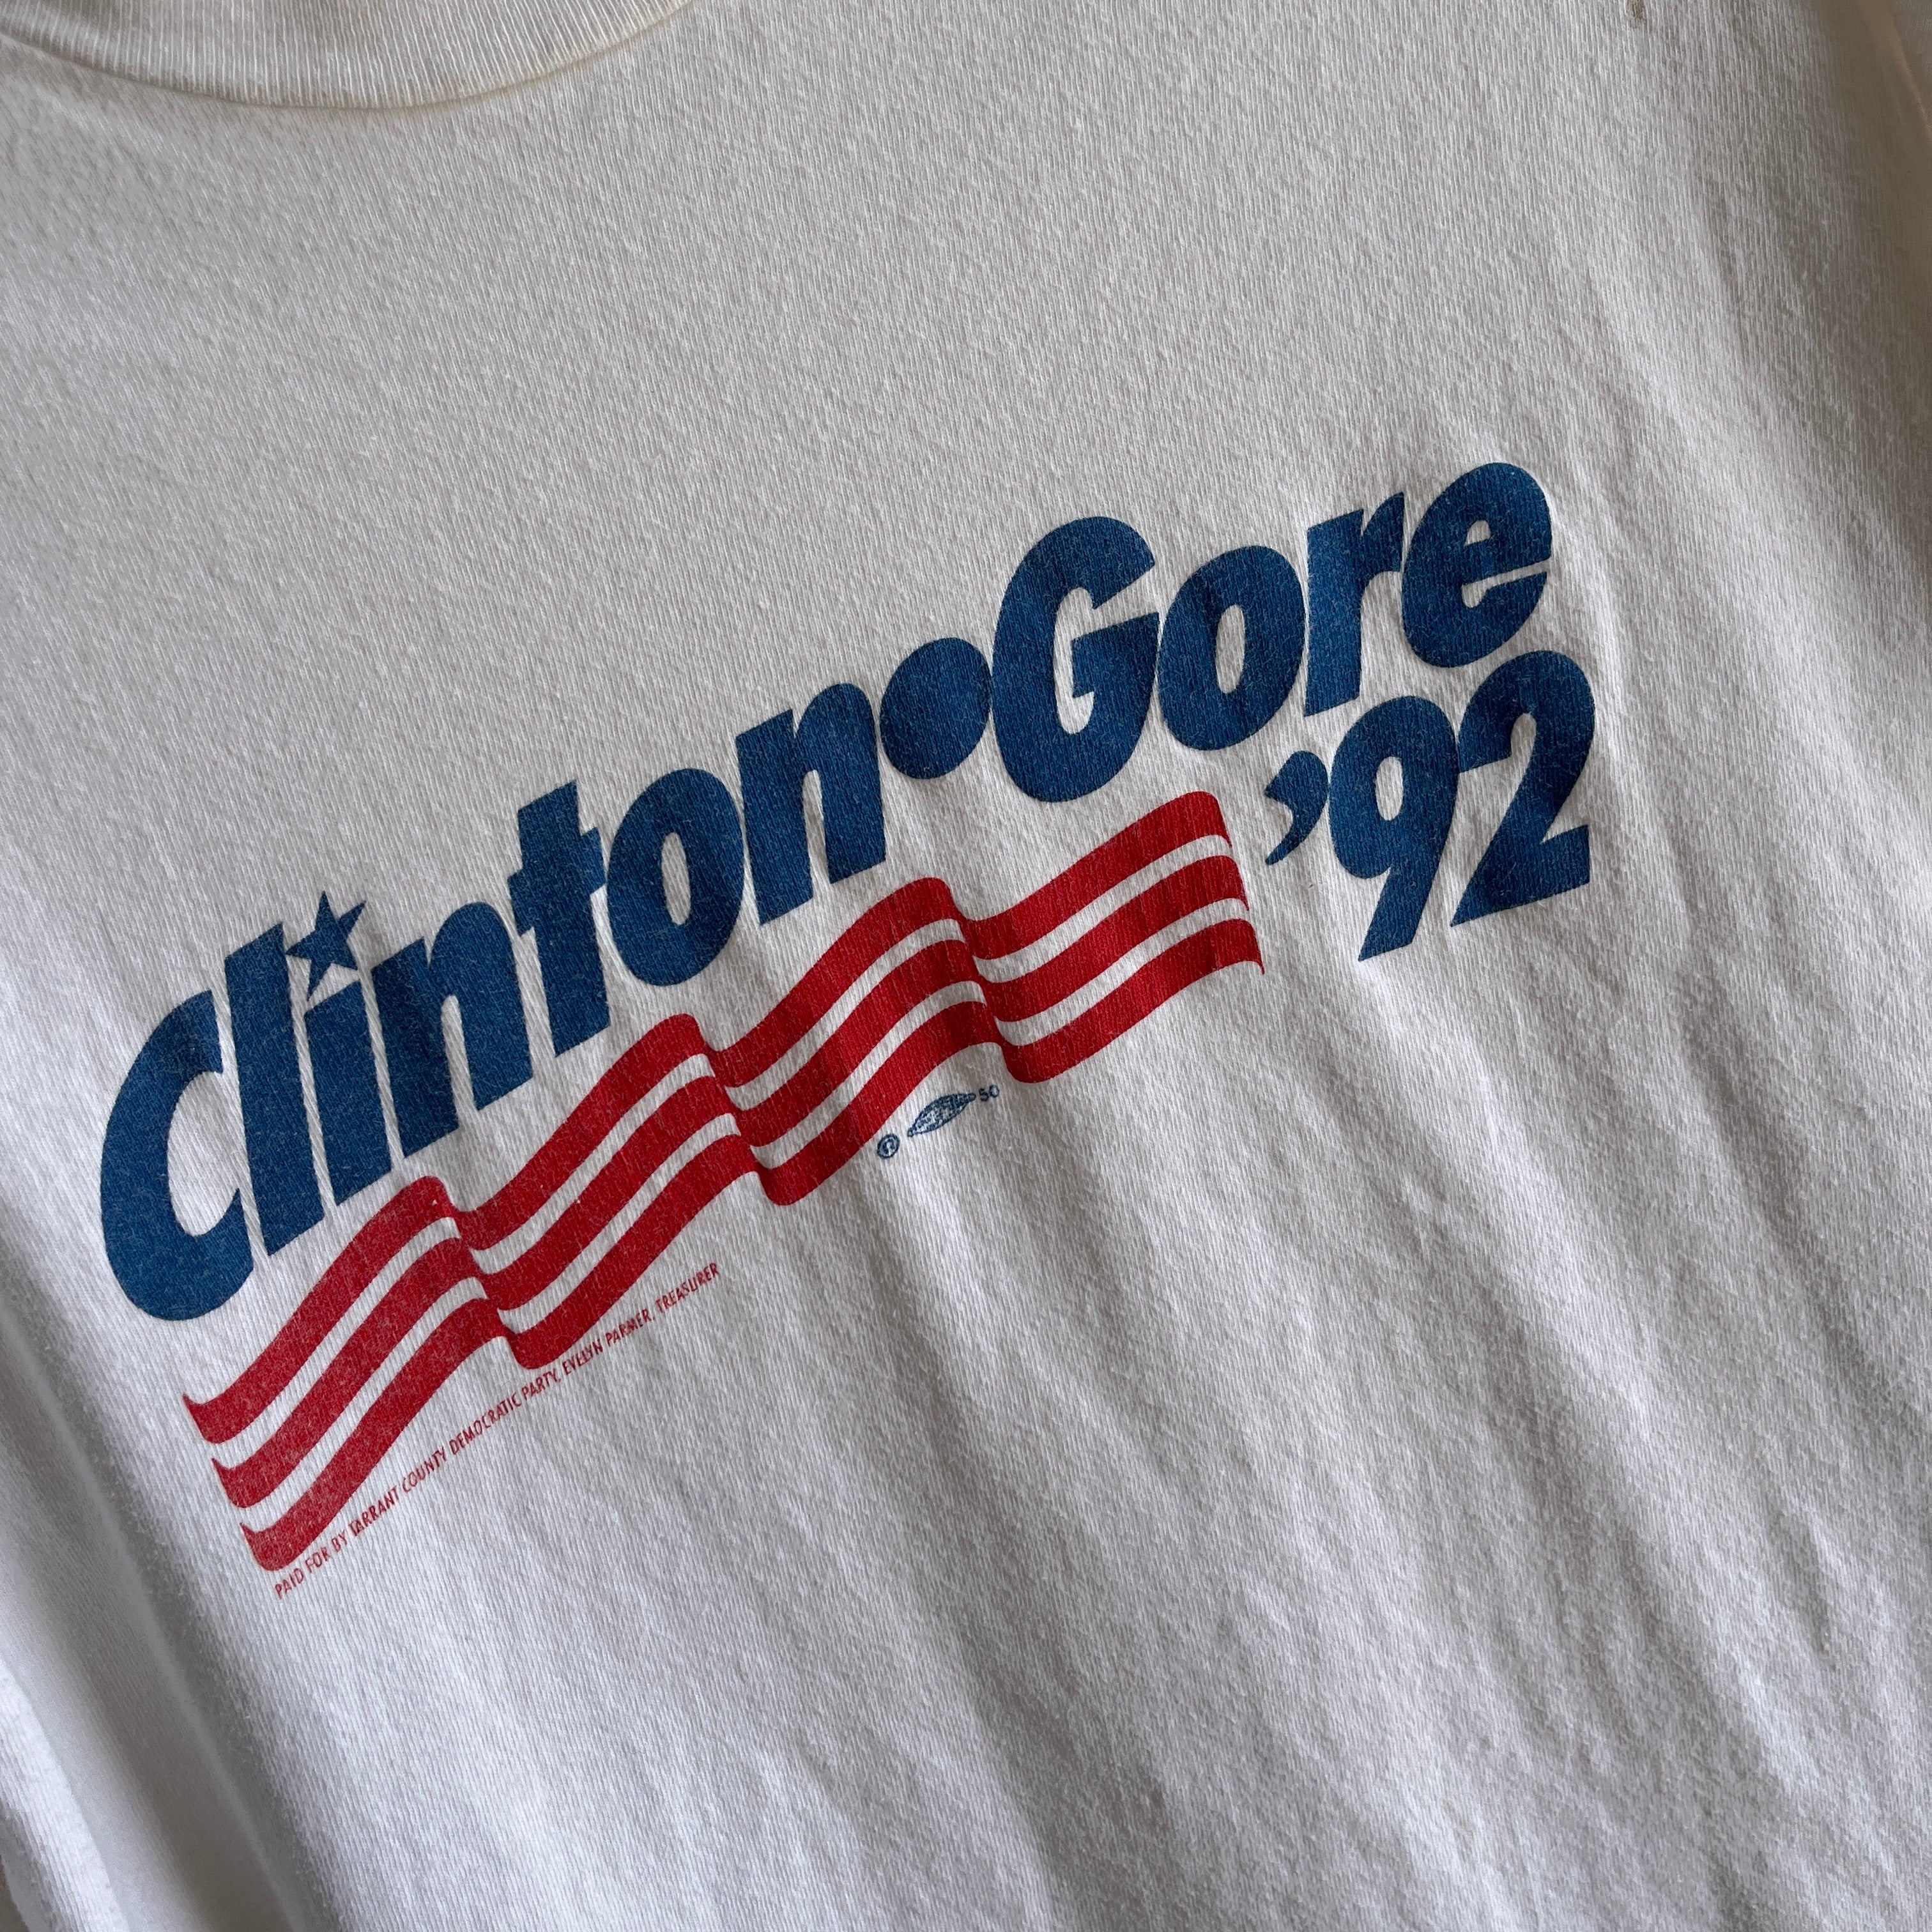 T-shirt de la campagne Clinton et Gore de 1992